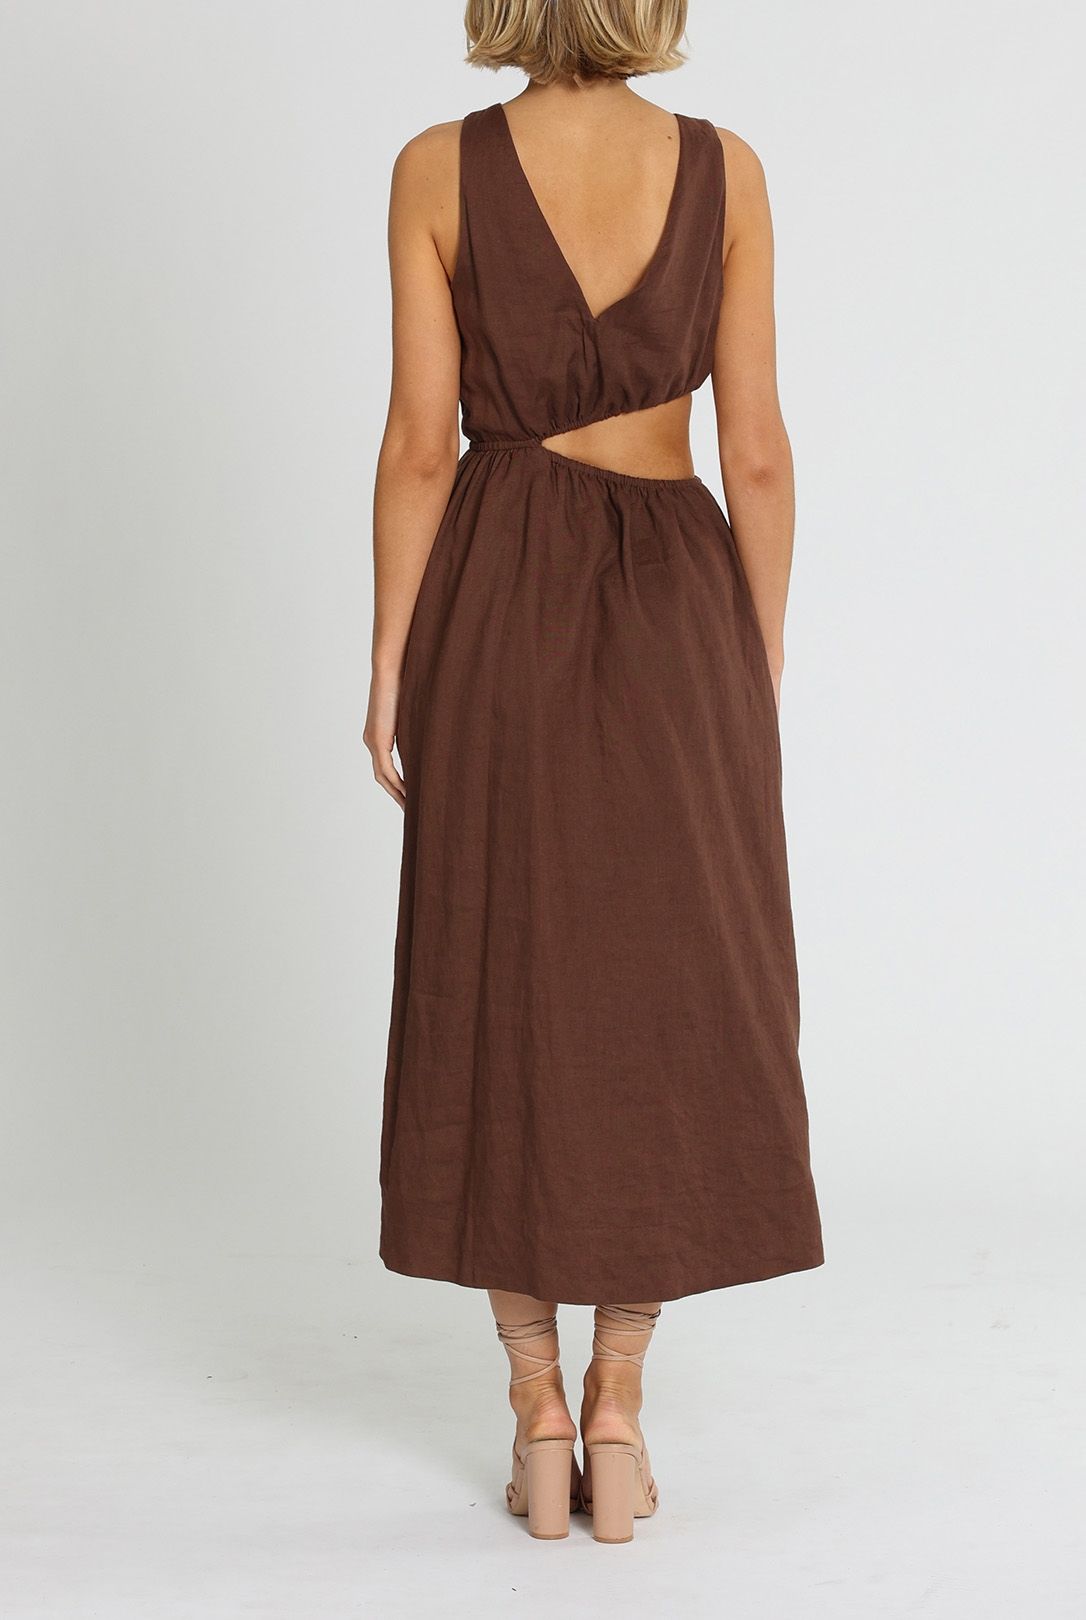 Sovere Mode Midi Dress Brown Asymmetric